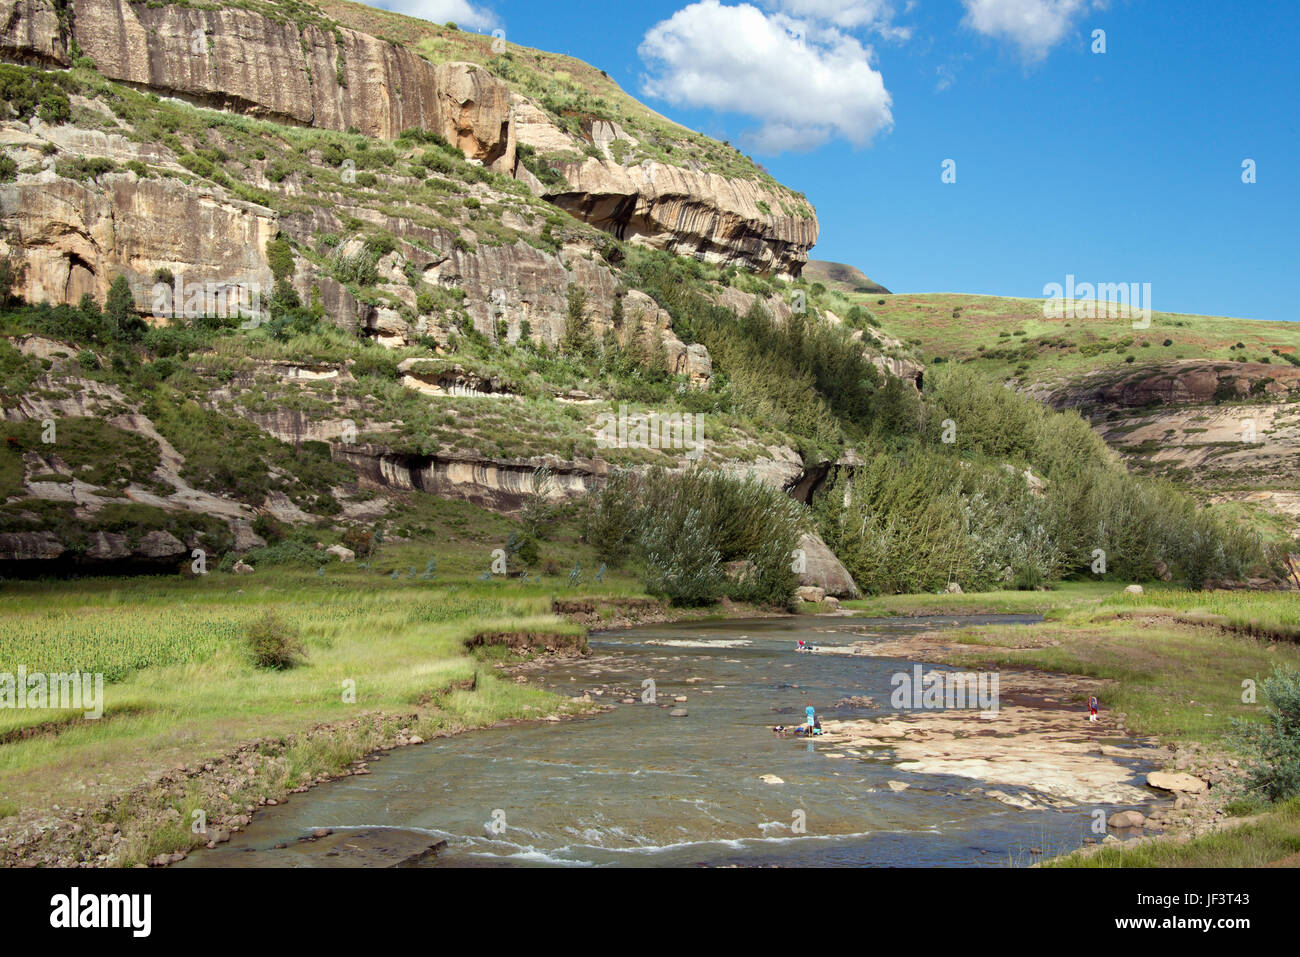 Courant Rapide de la rivière Hlotse district de Leribe Lesotho Afrique du Sud Banque D'Images